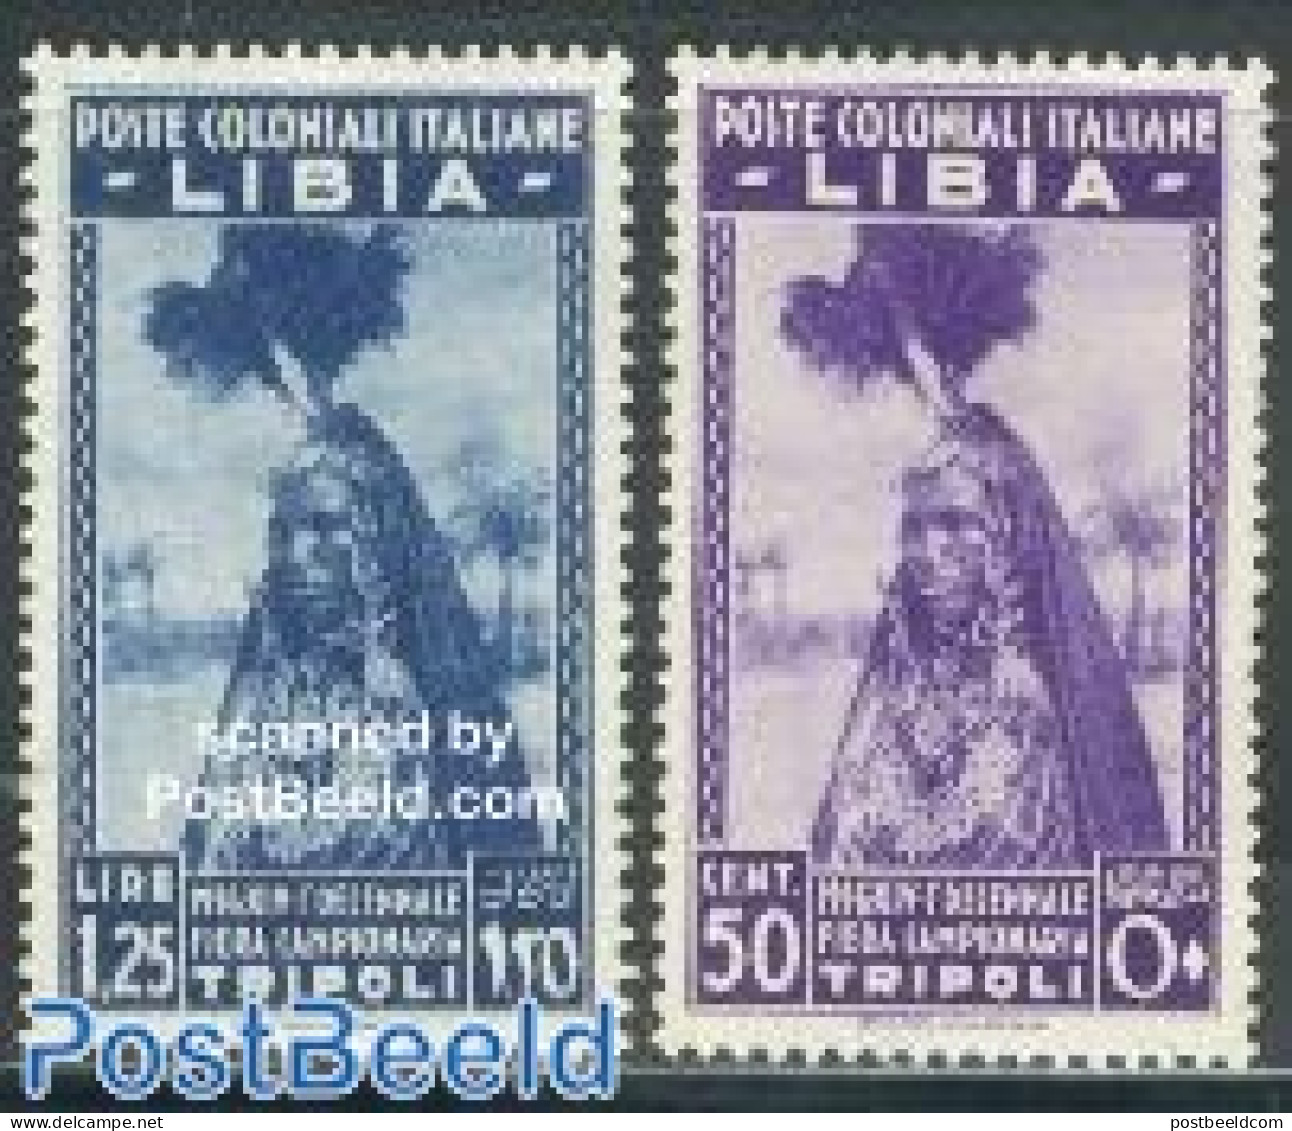 Italian Lybia 1936 Export Fair 2v, Mint NH - Libyen